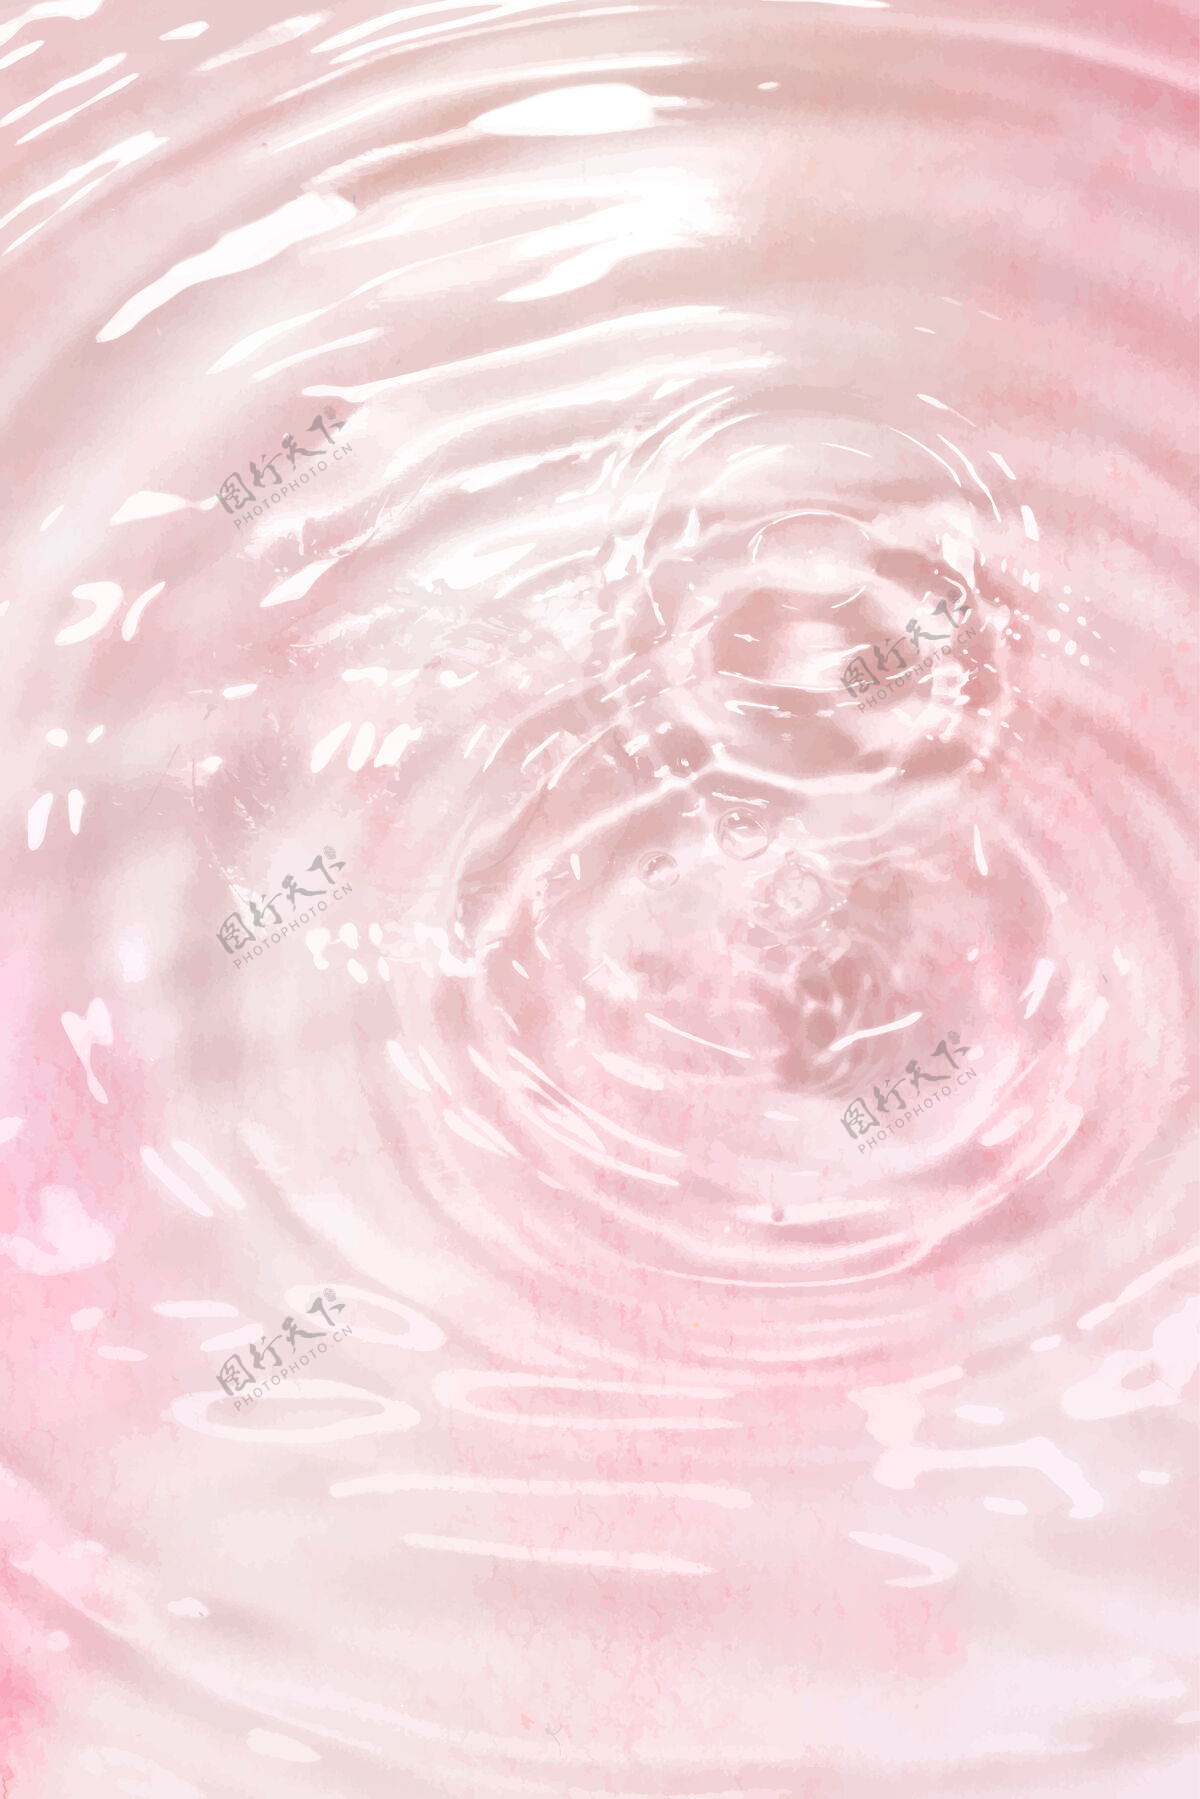 清晰粉红水波背景效果圆形抽象背景